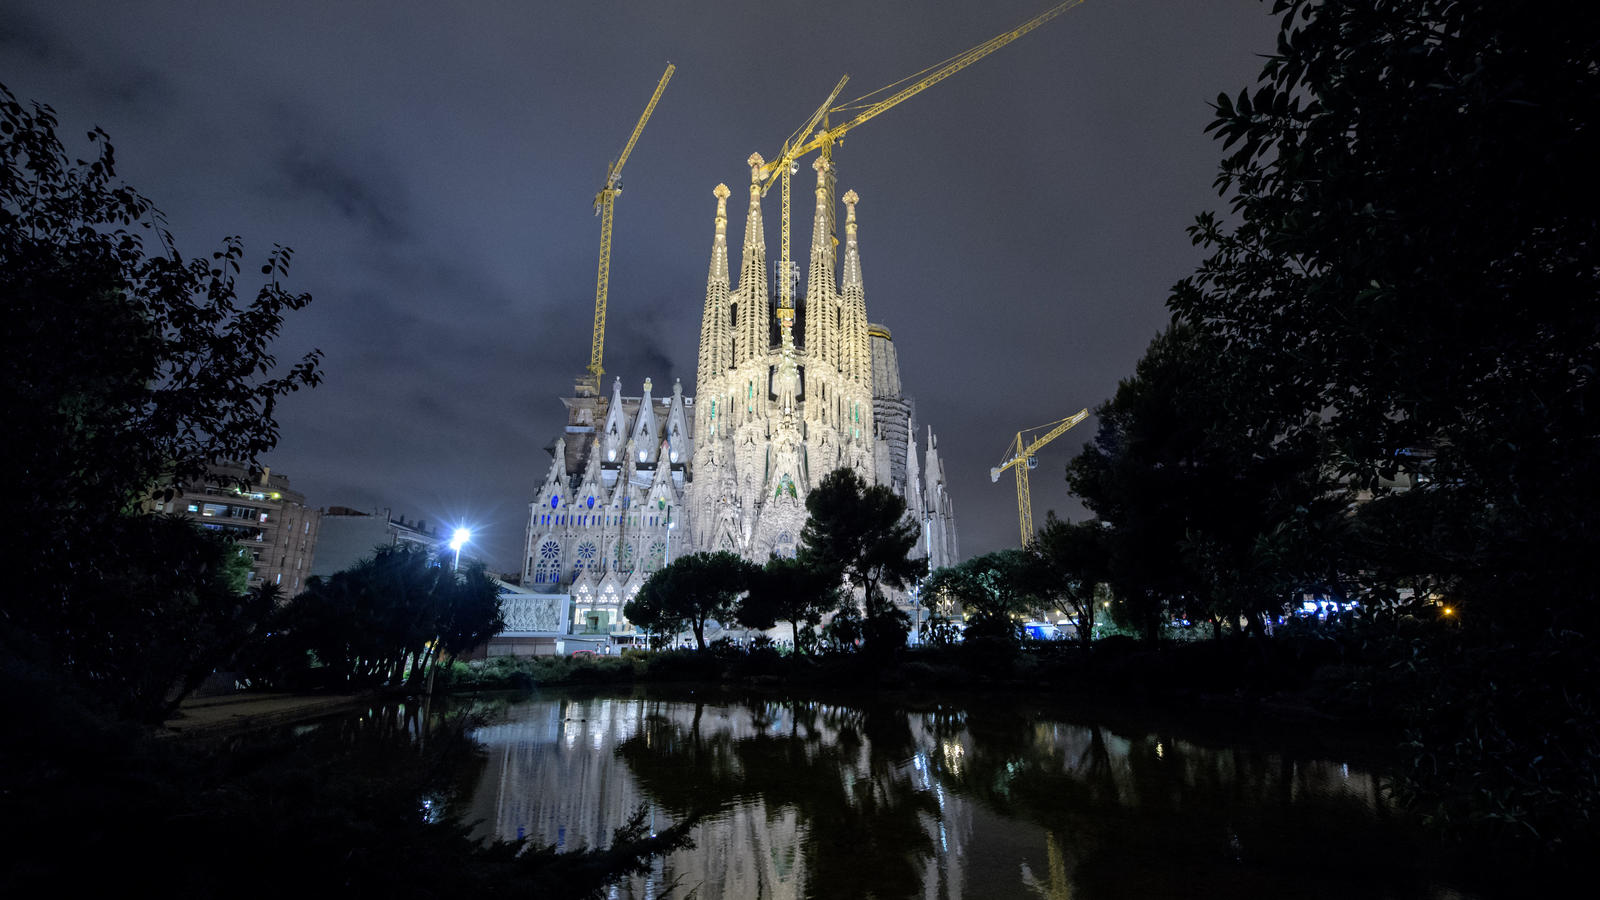 ARCHIV - Die römisch-katholische Basilika La Sagrada Familia ist am 19.08.2017 in Barcelona (Spanien) vor dem Abendhimmel zu sehen. Fünf Tage nach den Anschlägen in Spanien hat die Staatsanwaltschaft für die vier lebend gefassten mutmaßlichen Mitglie